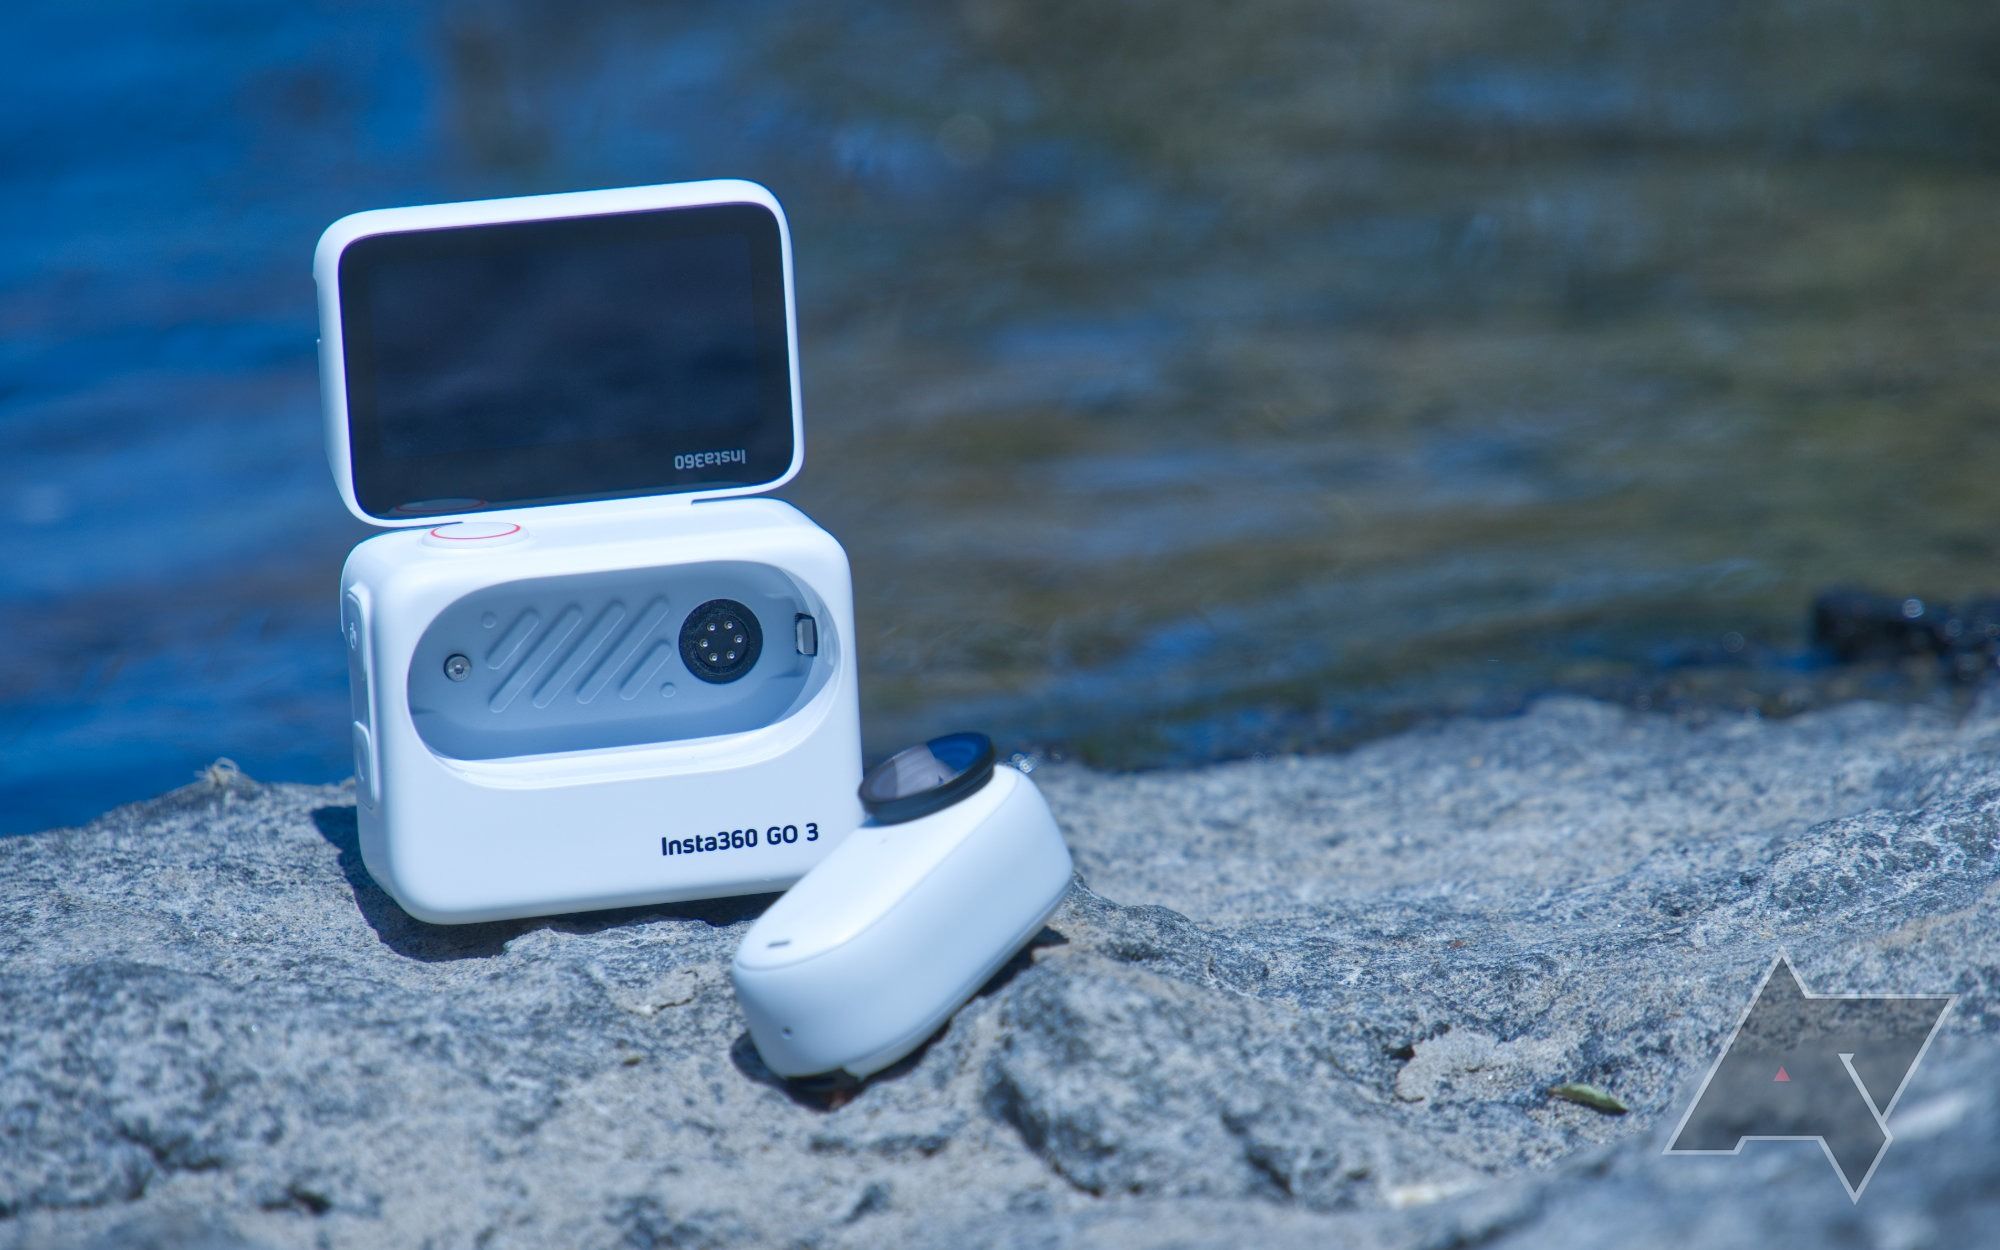 Insta360 Go 3 review: Small camera, big possibilities